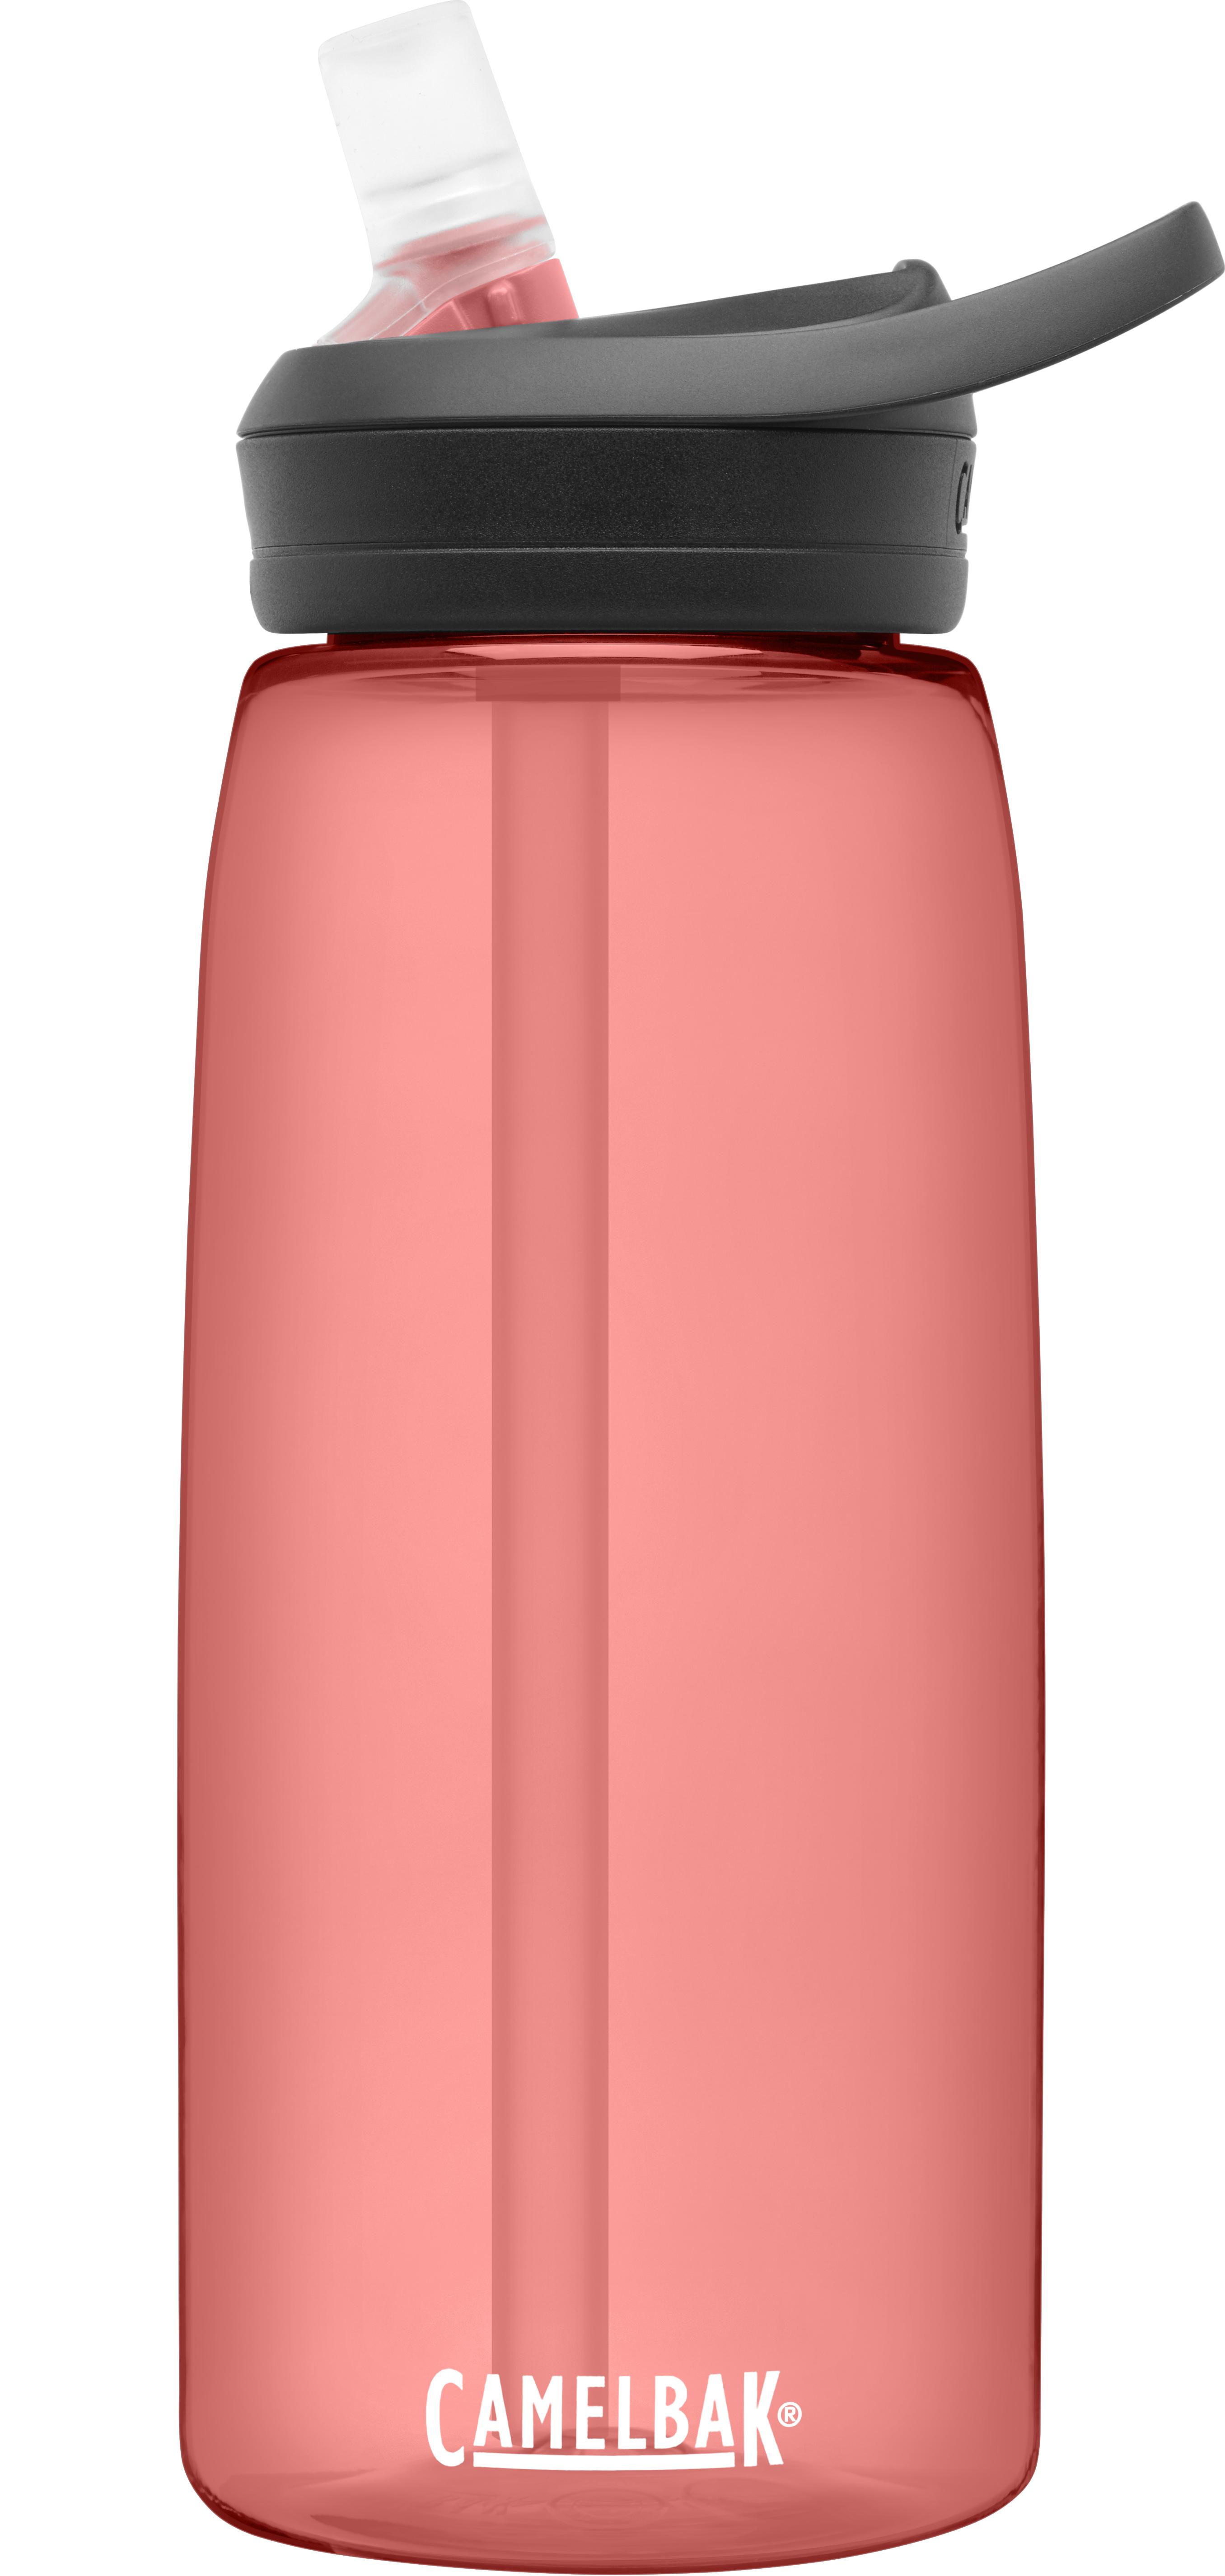 Camelbak Eddy 1l Bottle - Terracota Rose